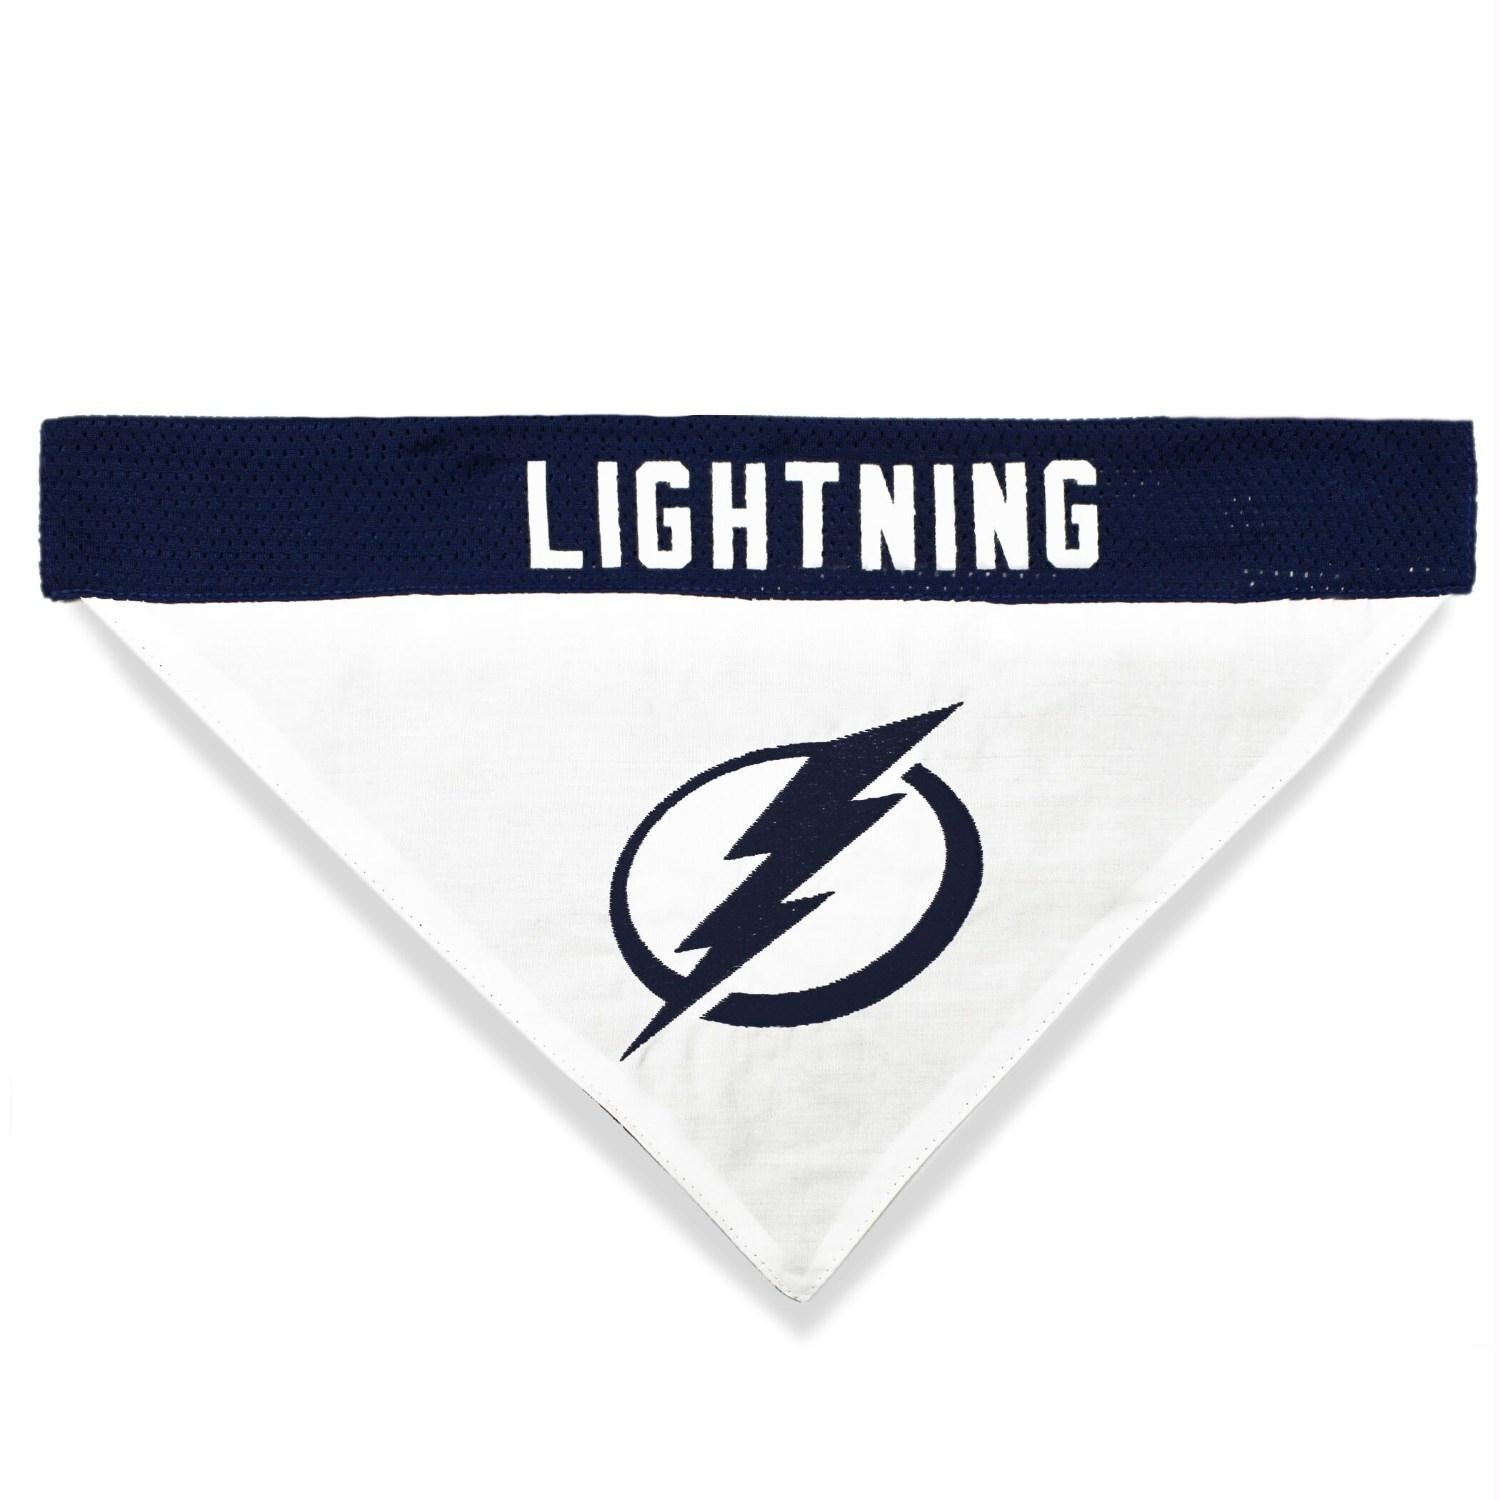 Tampa Bay Lightning Dog Jersey Medium